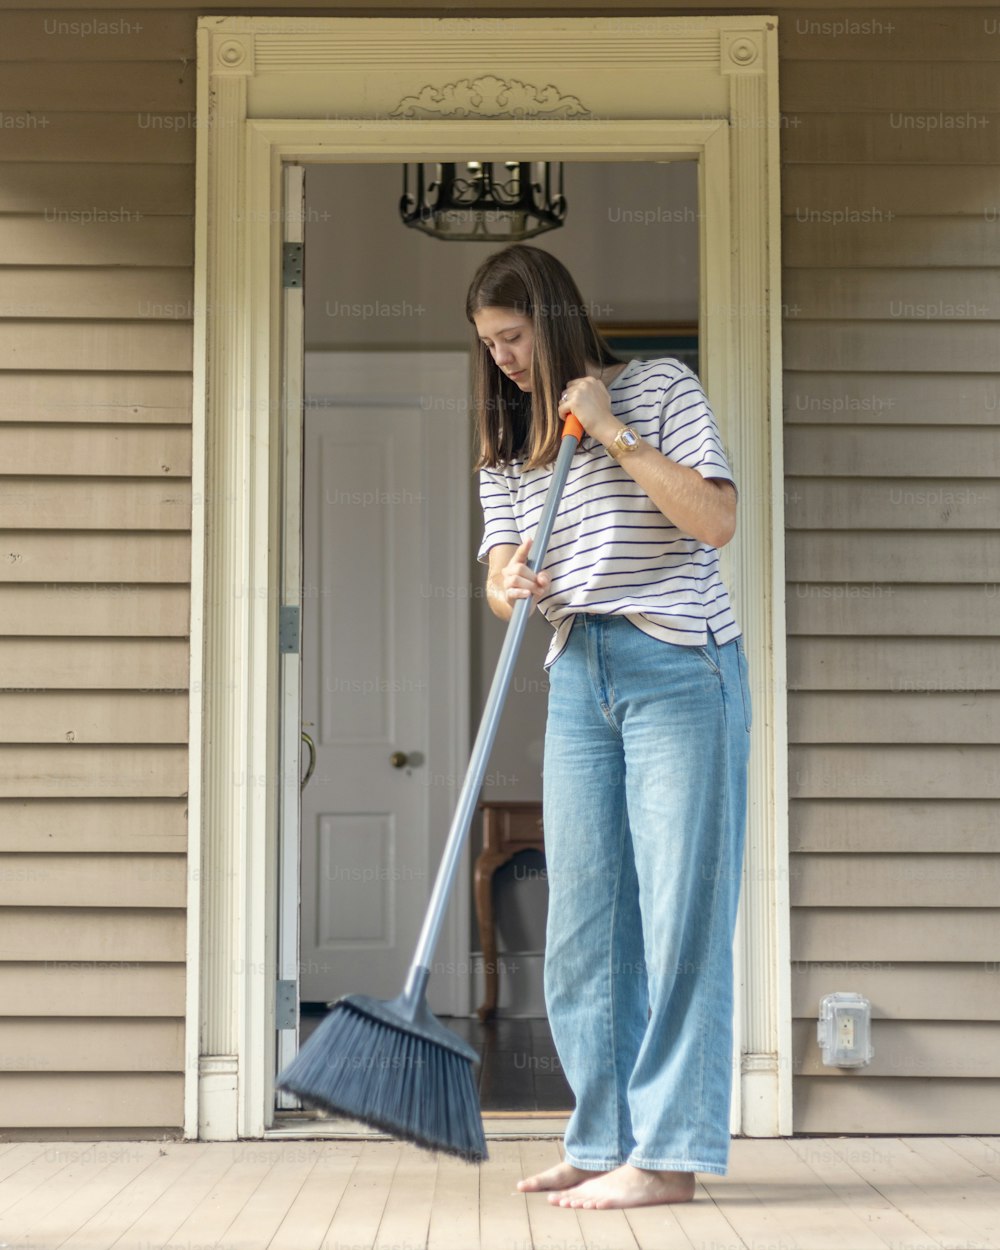 Una mujer parada en un porche con una escoba